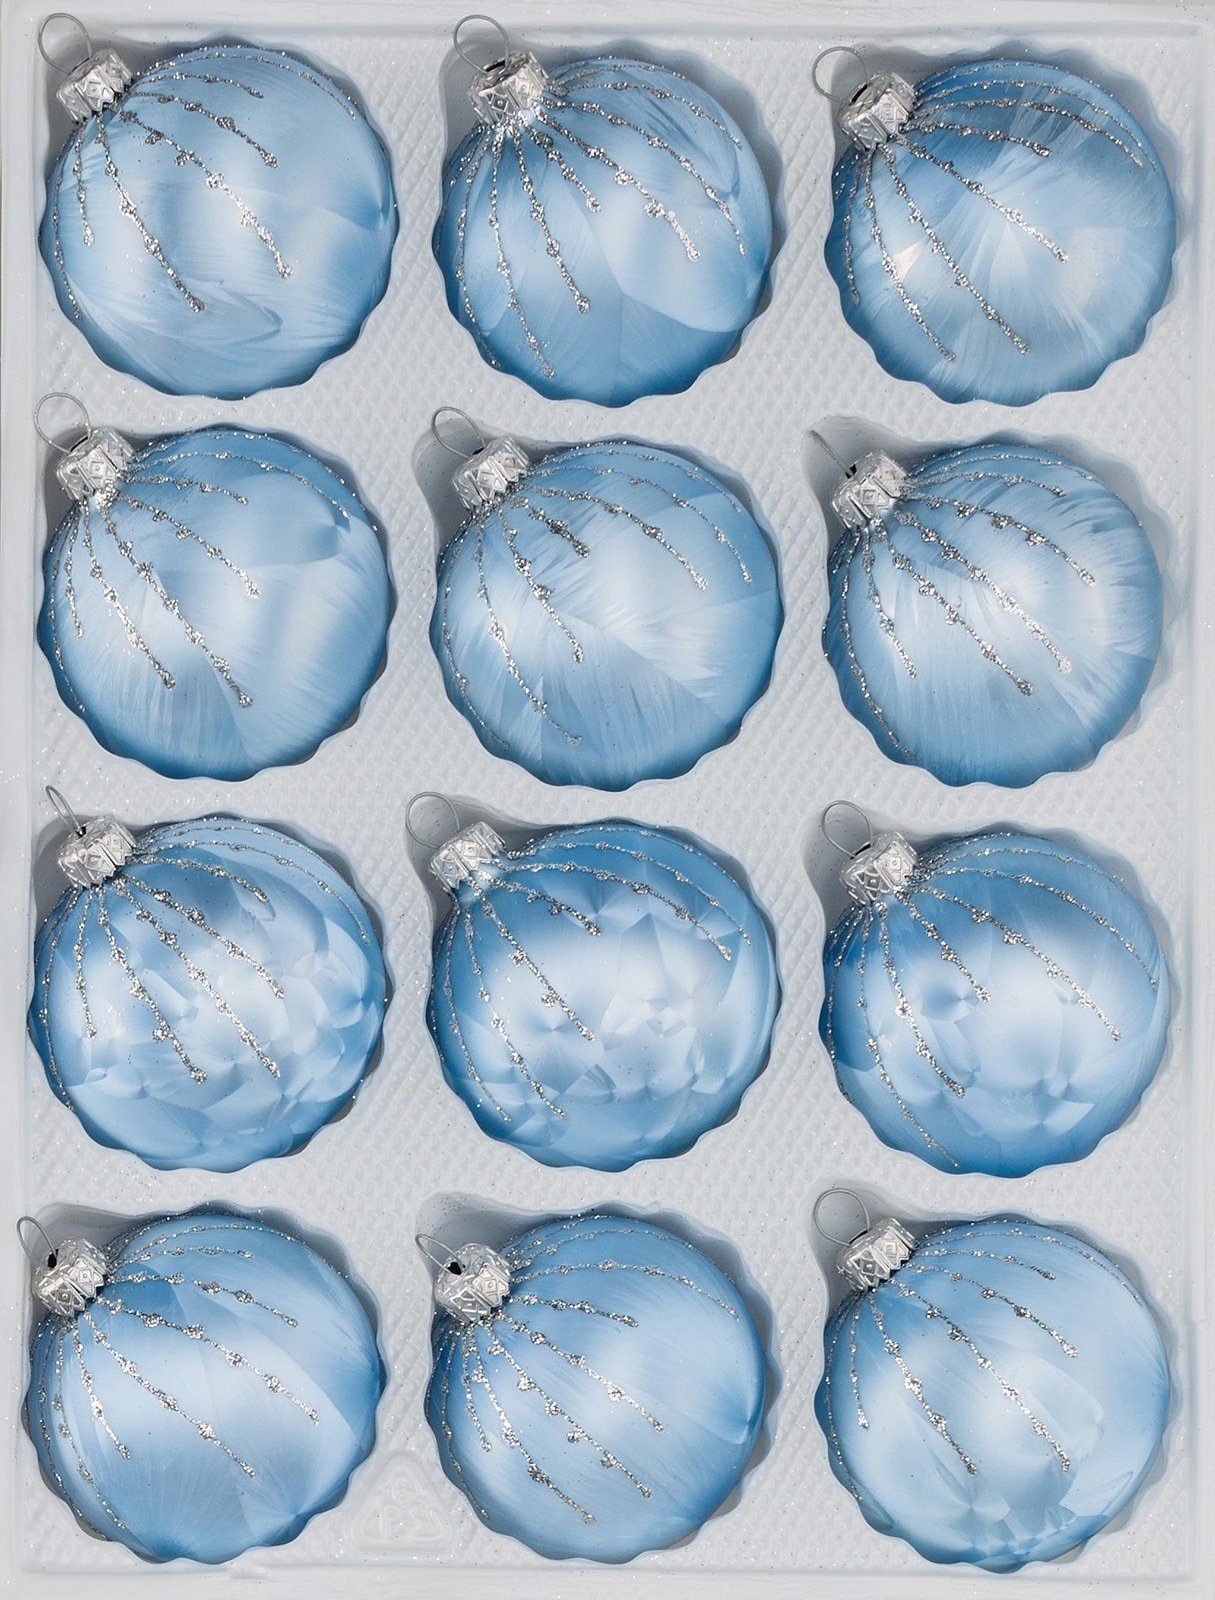 Navidacio Weihnachtsbaumkugel 12 tlg. Glas-Weihnachtskugeln Set in Ice Blau Silber Regen